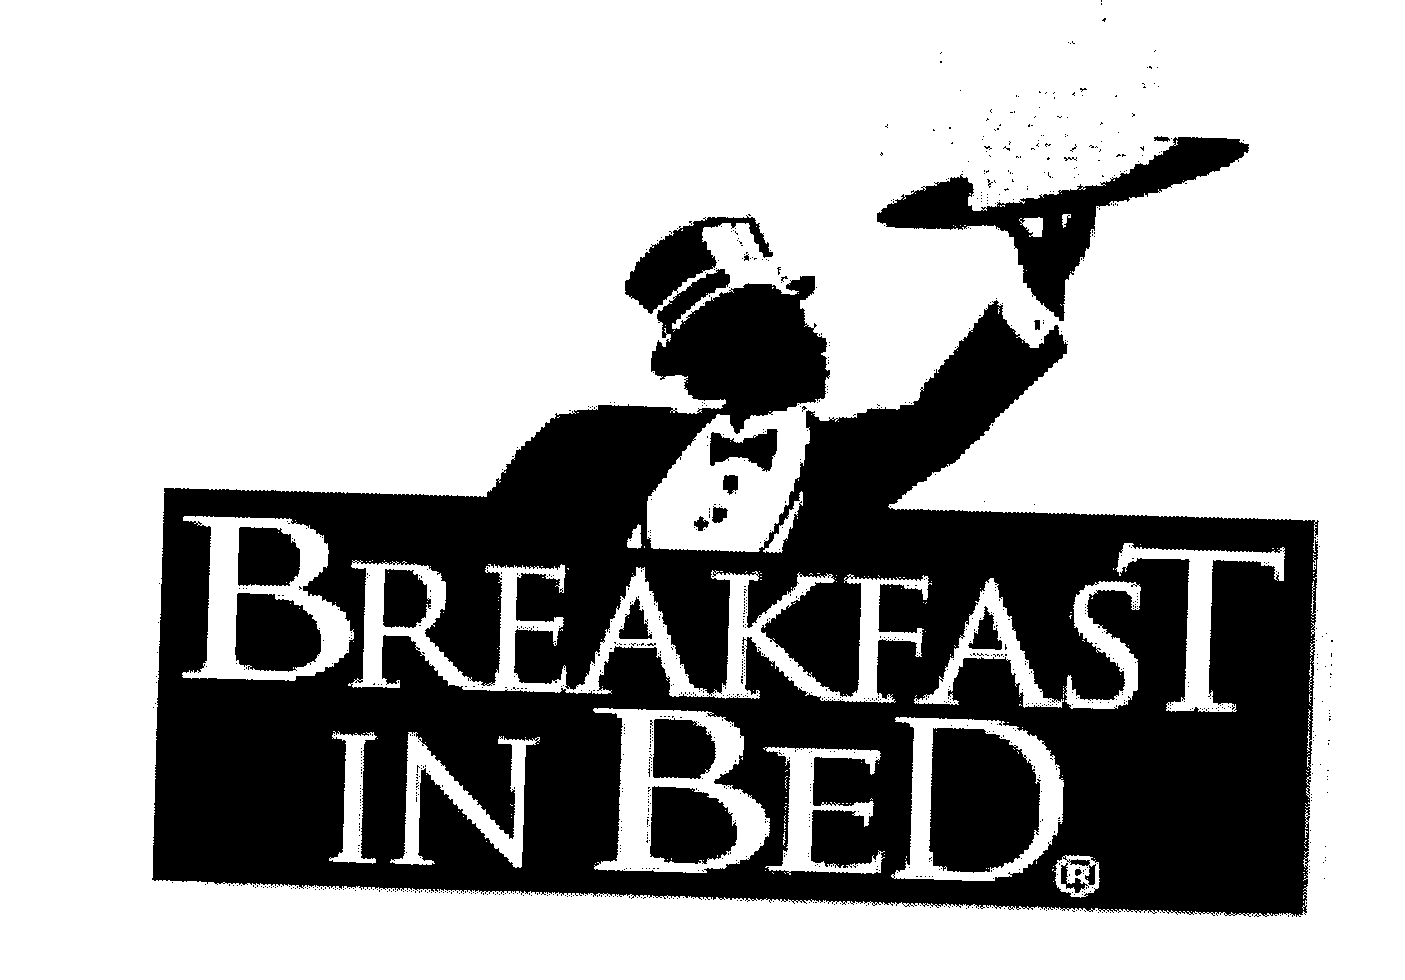 Trademark Logo BREAKFAST IN BED